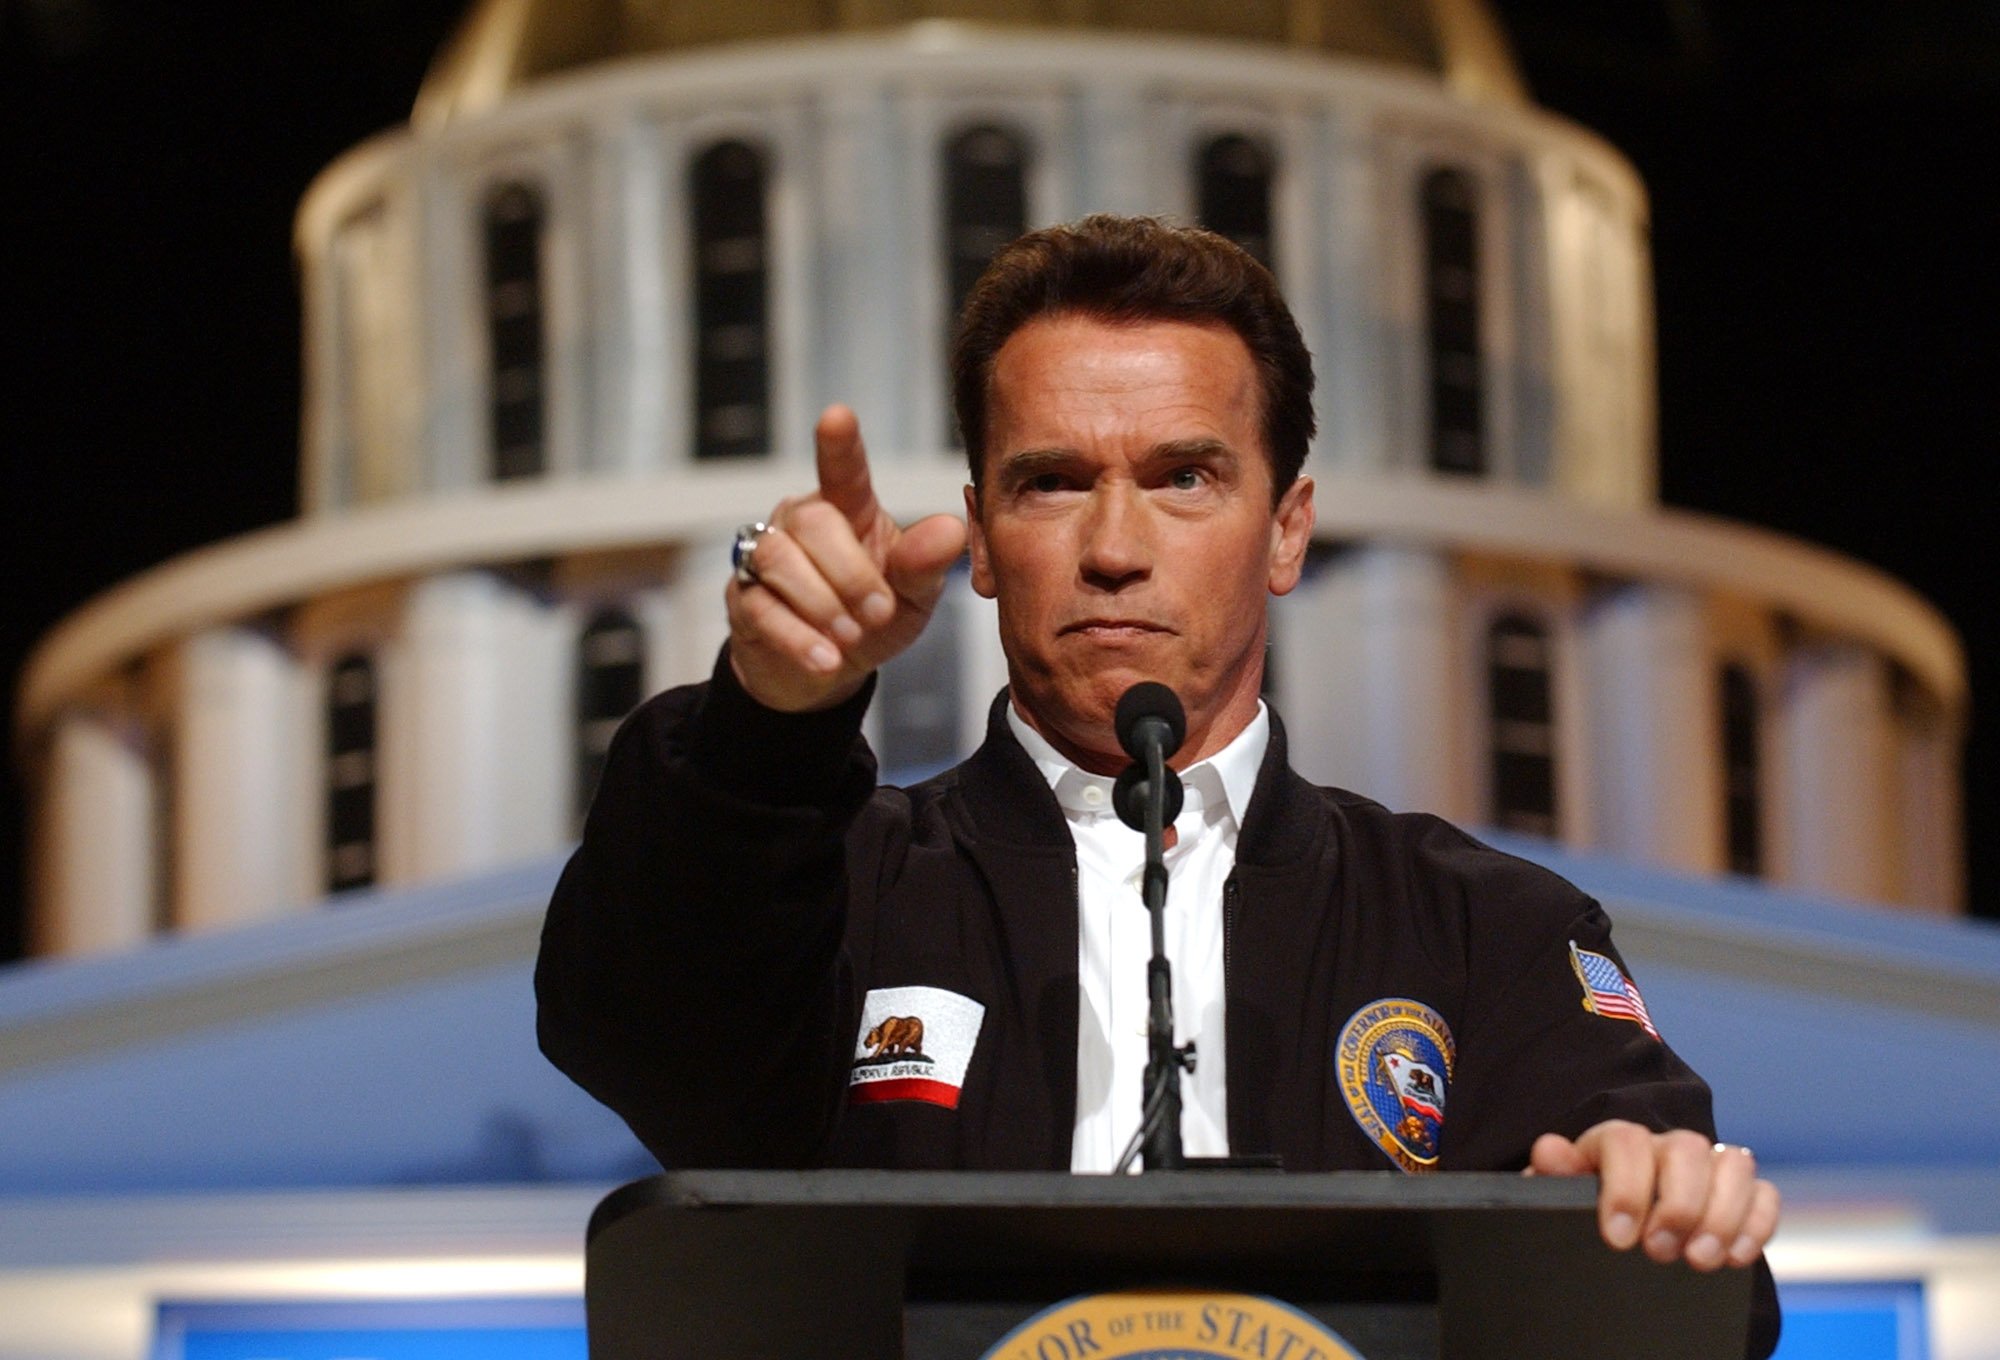 Арнольд Шварценеггер (Arnold Schwarzenegger). Біографія. Фото. Особисте життя